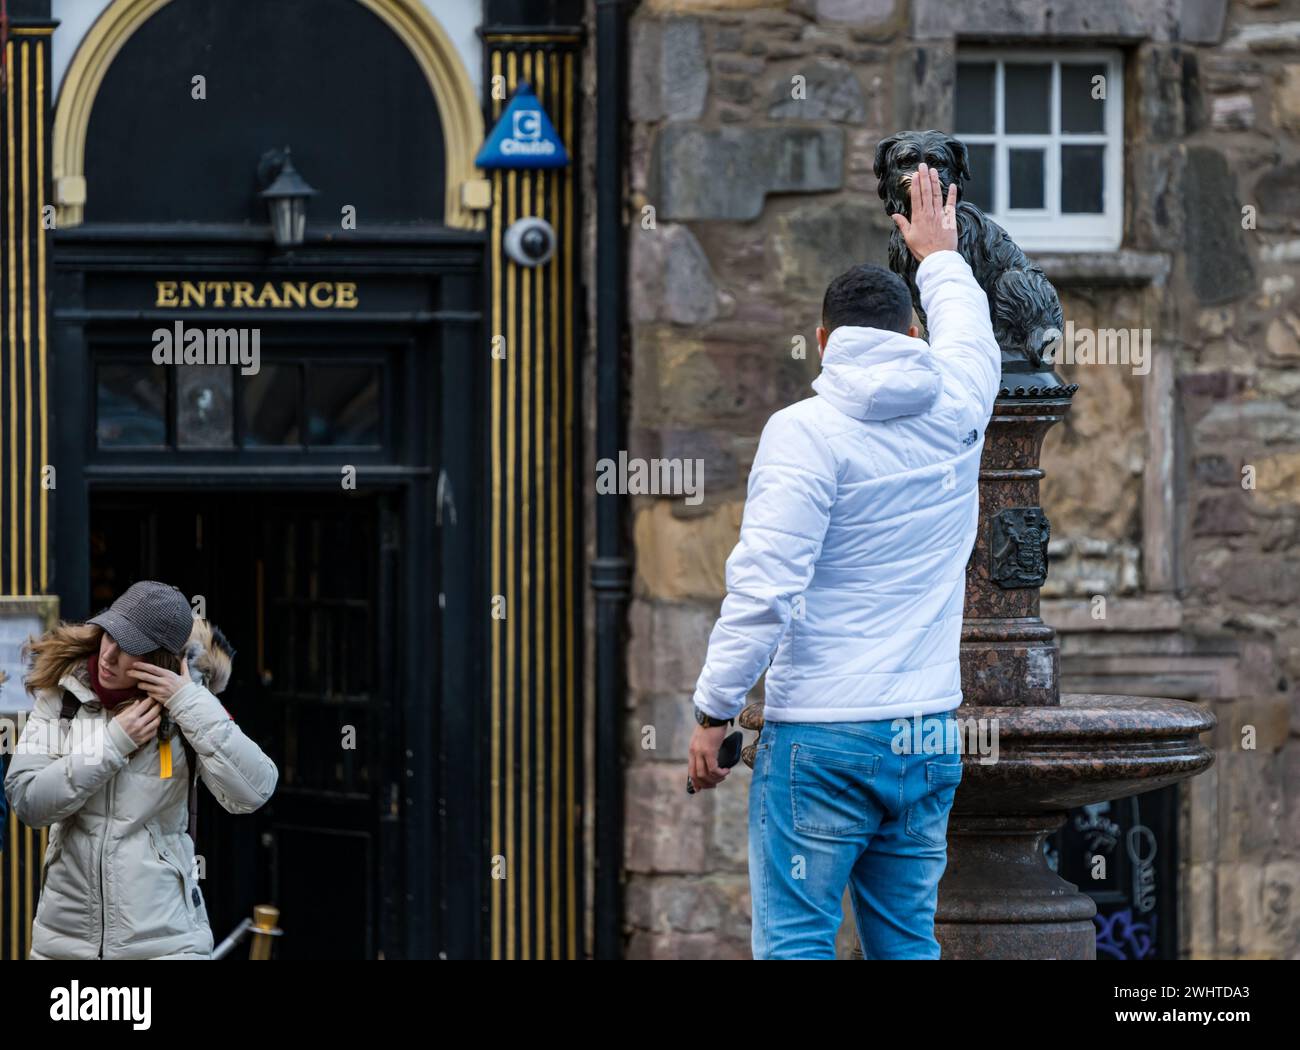 Touristische berührende Nase der Greyfriar's Bobby Dog Statue for Good Luck, Edinburgh, Schottland, Großbritannien Stockfoto